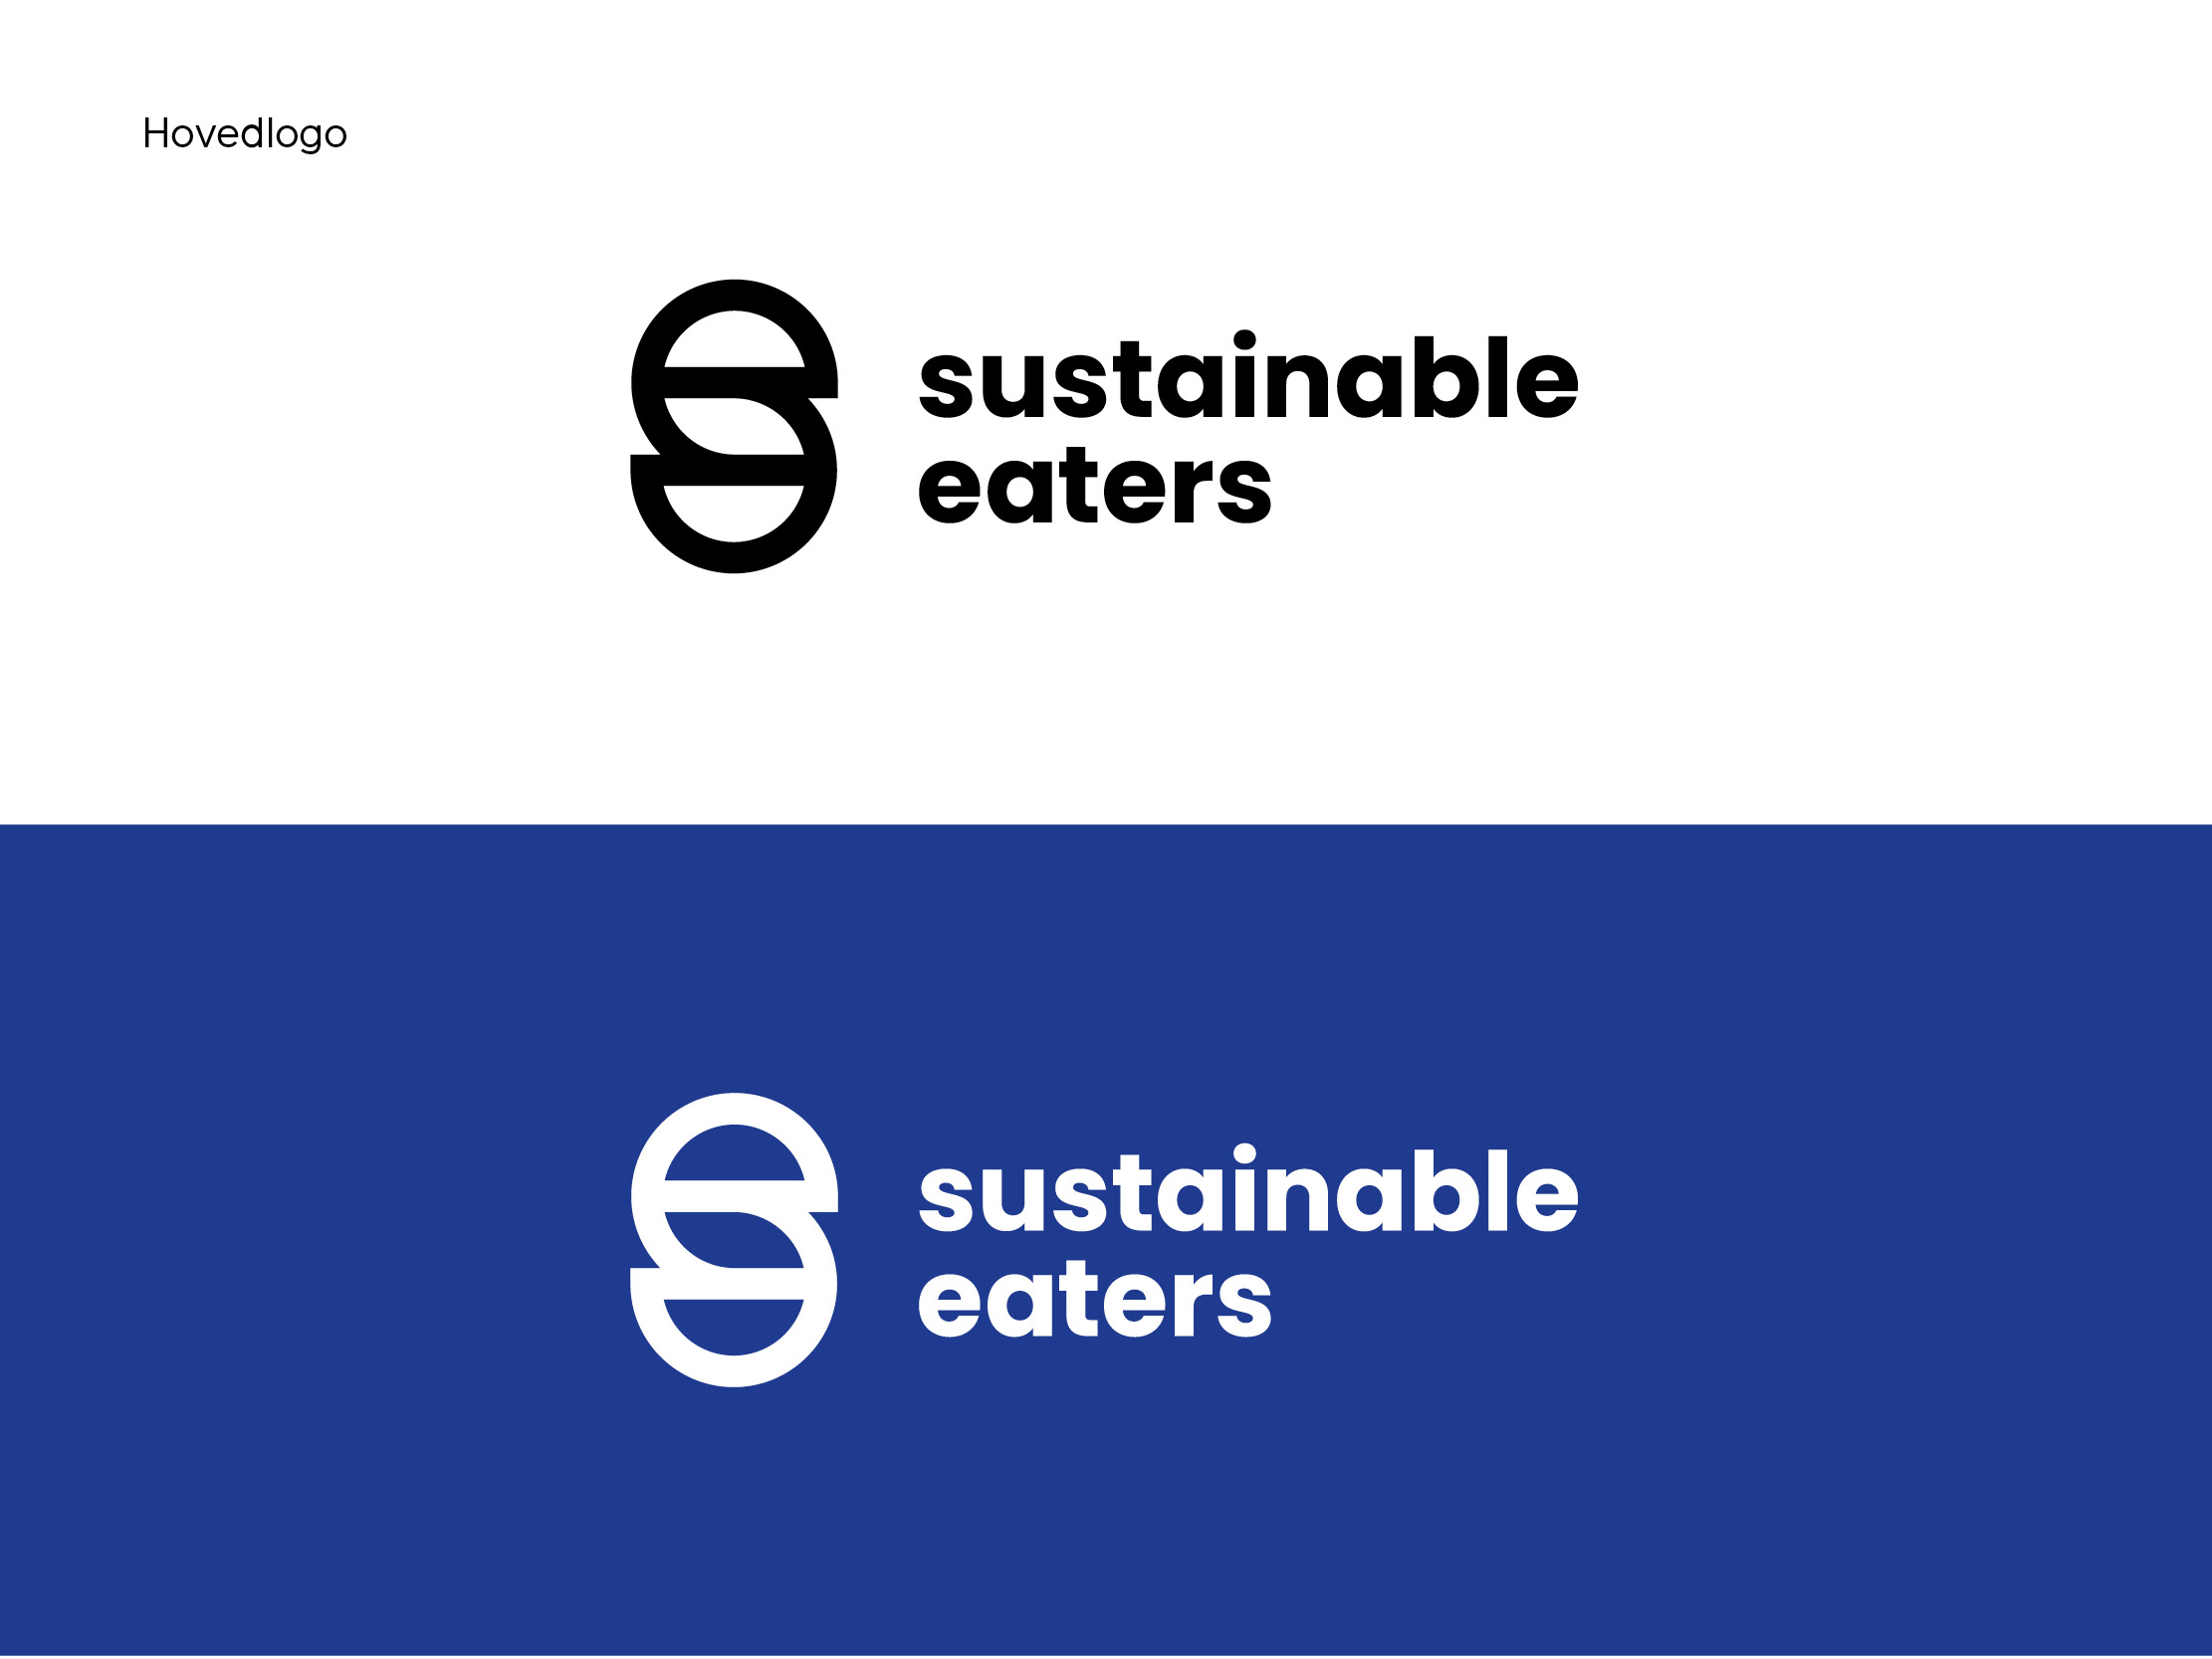 Design av hovedlogo i svart og hvit for Sustainable eaters.